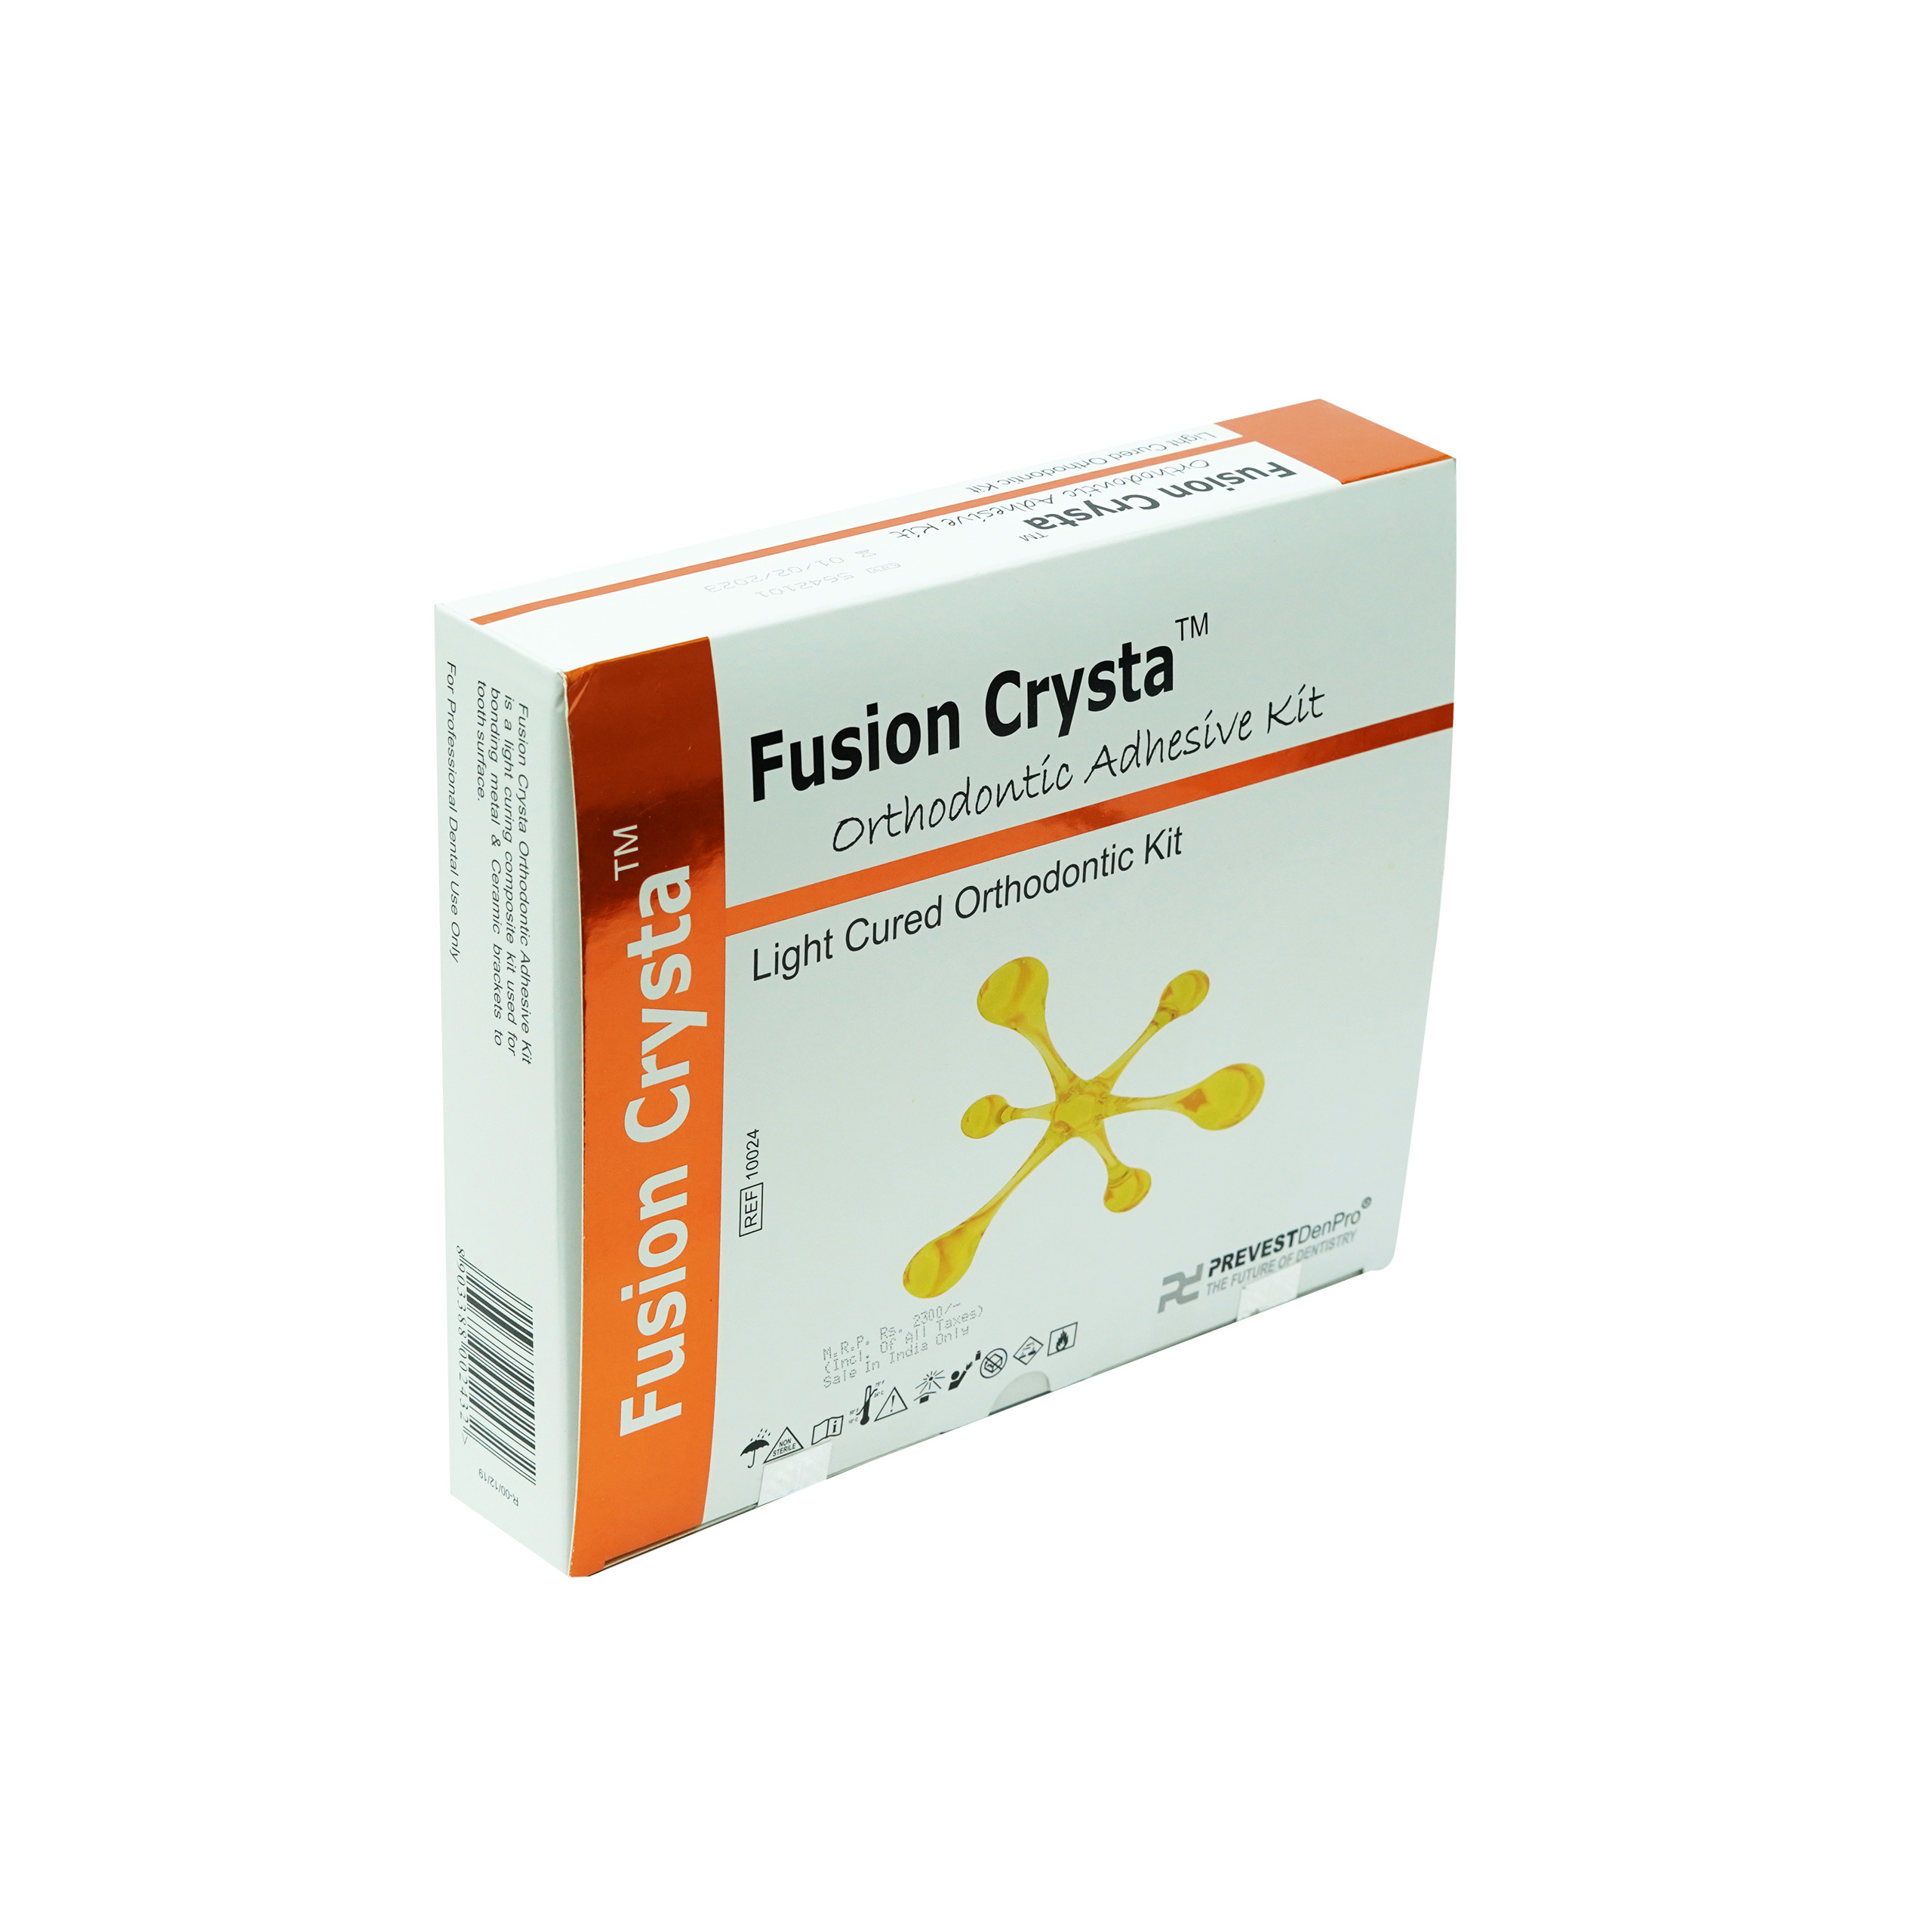 Prevest Denpro Fusion Crysta Ortho Kit